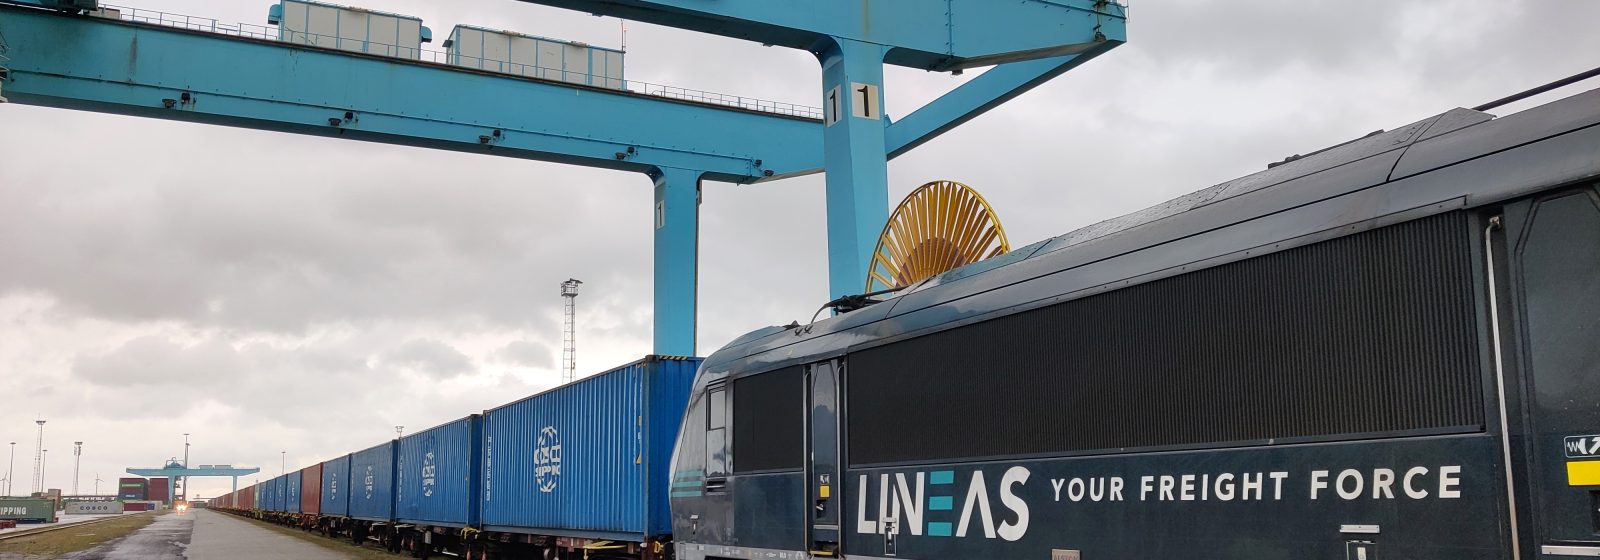 Trein van Lineas en COSCO Shipping Lines bij CSP Zeebrugge